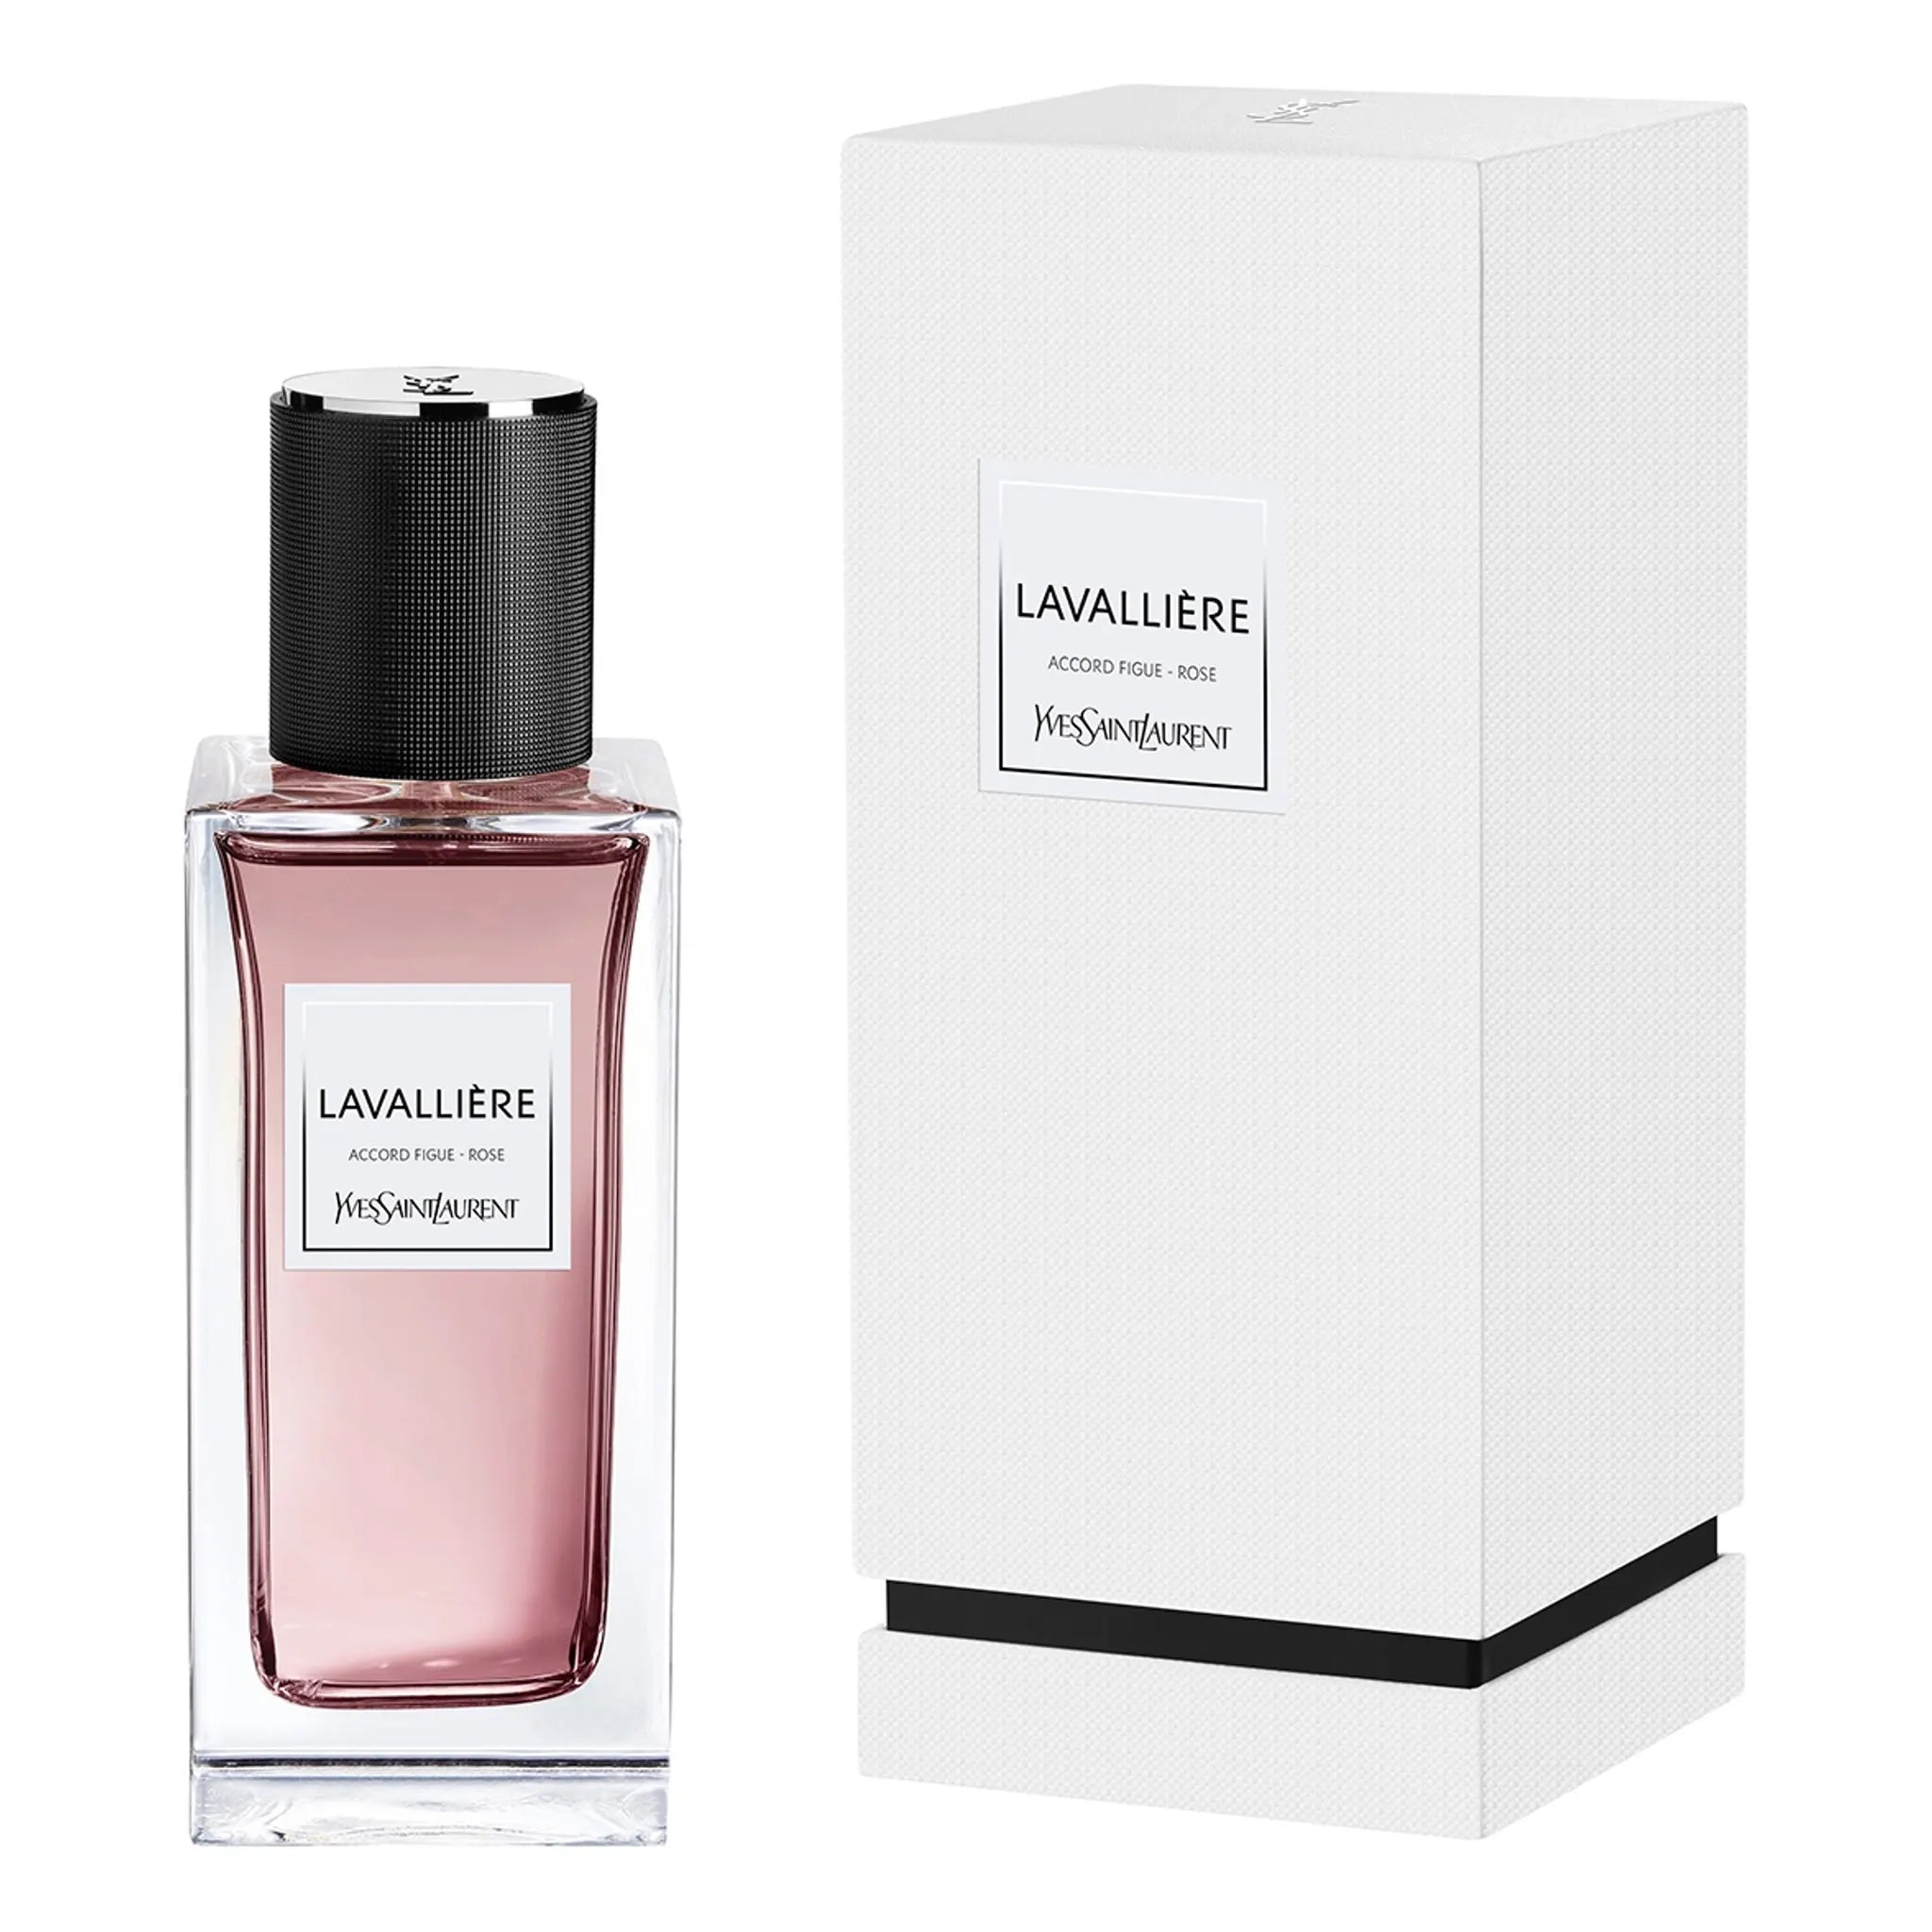 Detail box view of Yves Saint Laurent Lavalliere Eau De Parfum 125ml 3878443